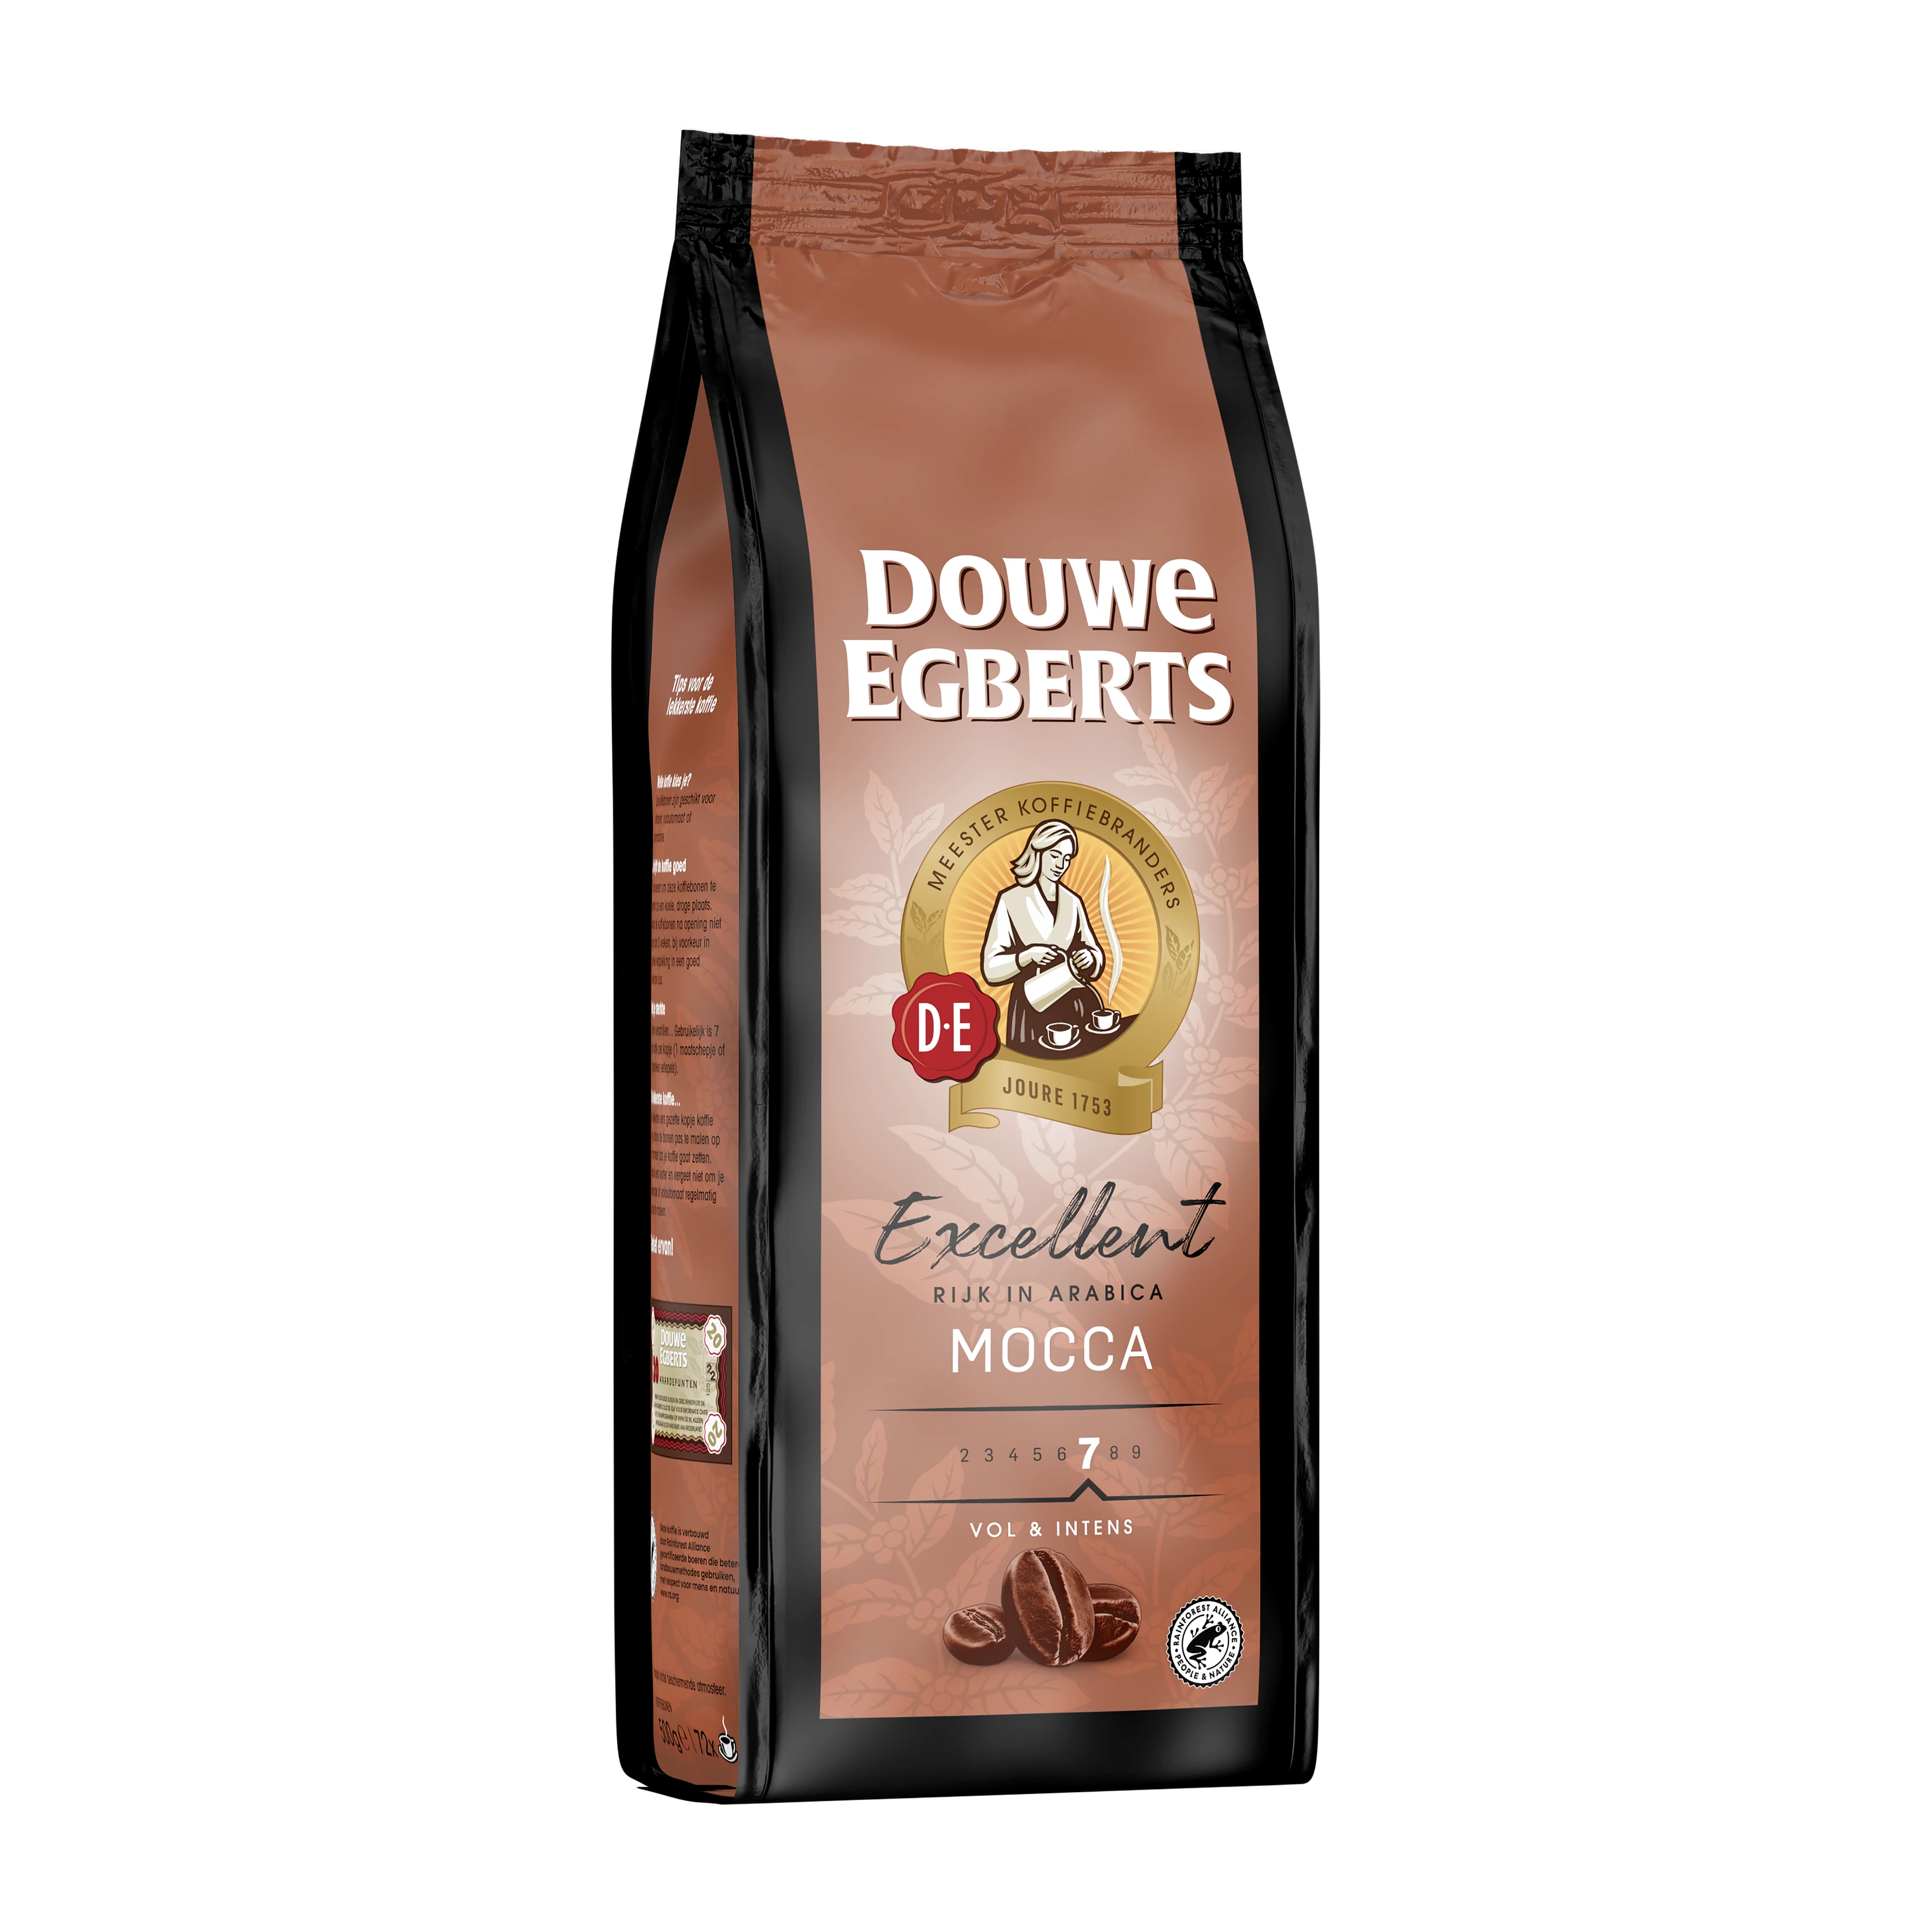 Verpakking van de Douwe Egberts Excellent mocca koffiebonen.